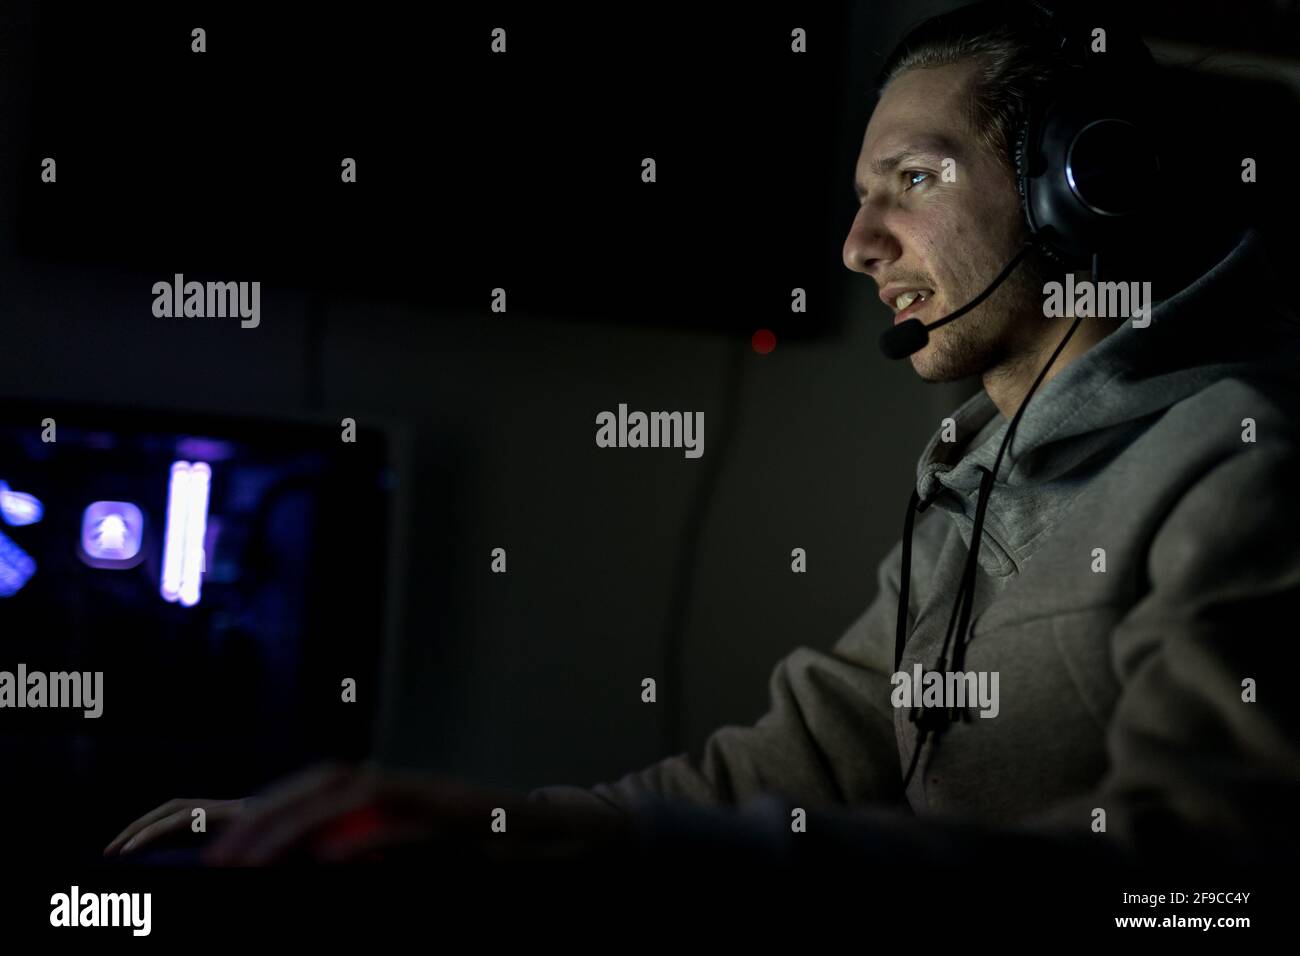 Professioneller Gamer oder Streamer, der Ego-Shooter-Online-Videospiel auf einem speziell angefertigten Gaming-PC spielt. Er trägt ein Headset Stockfoto